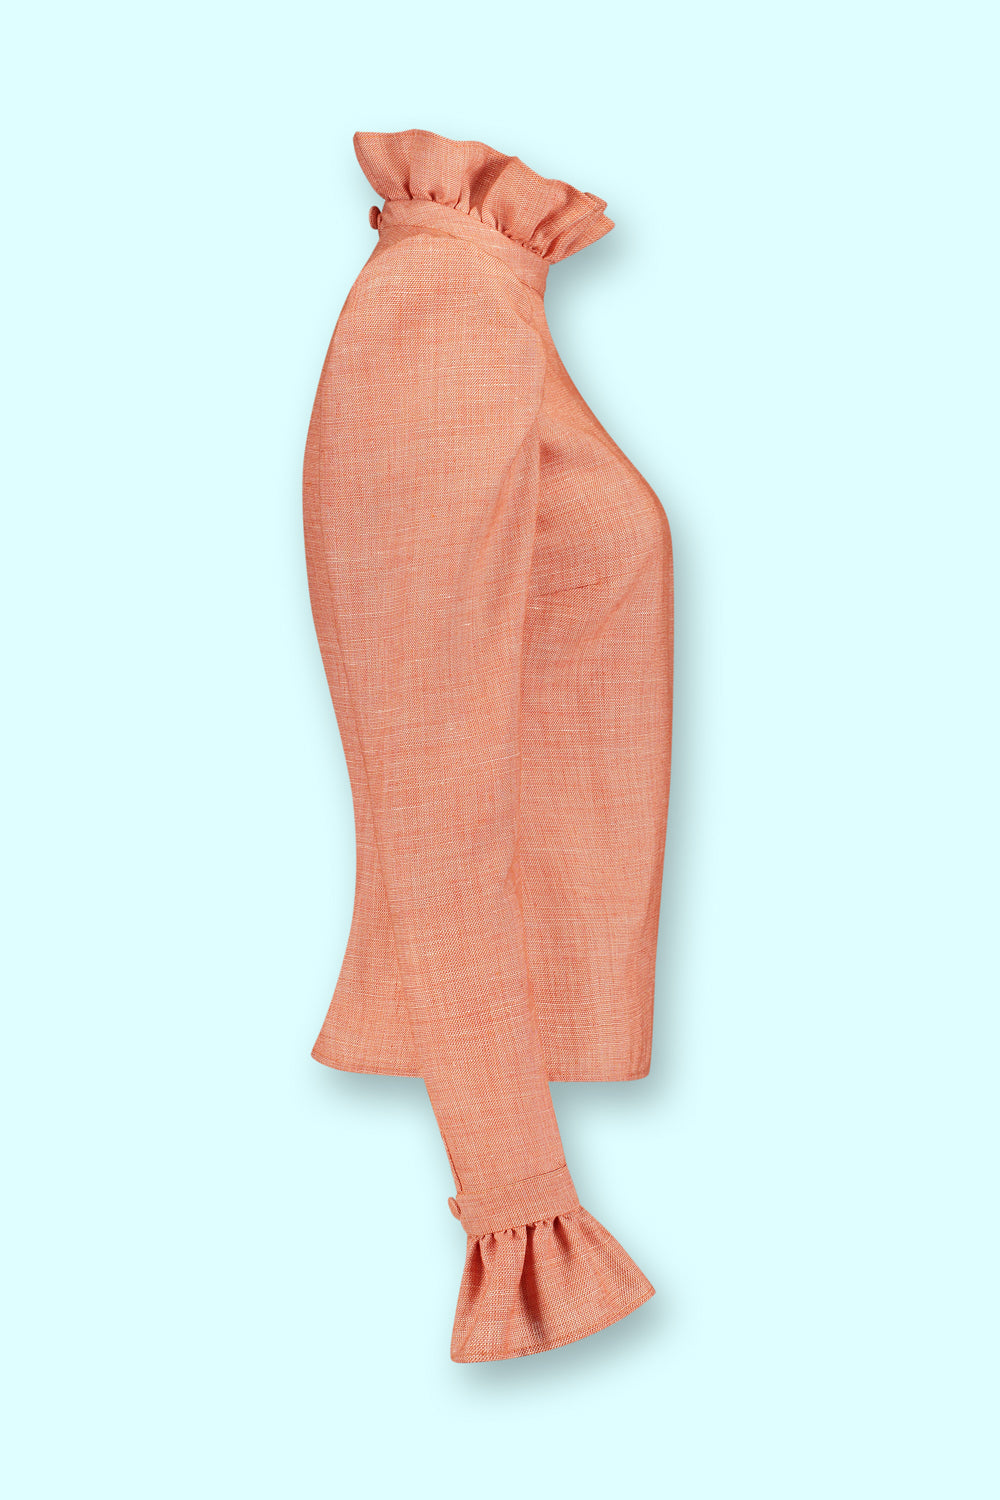 CoutureBlouse (orange-red)